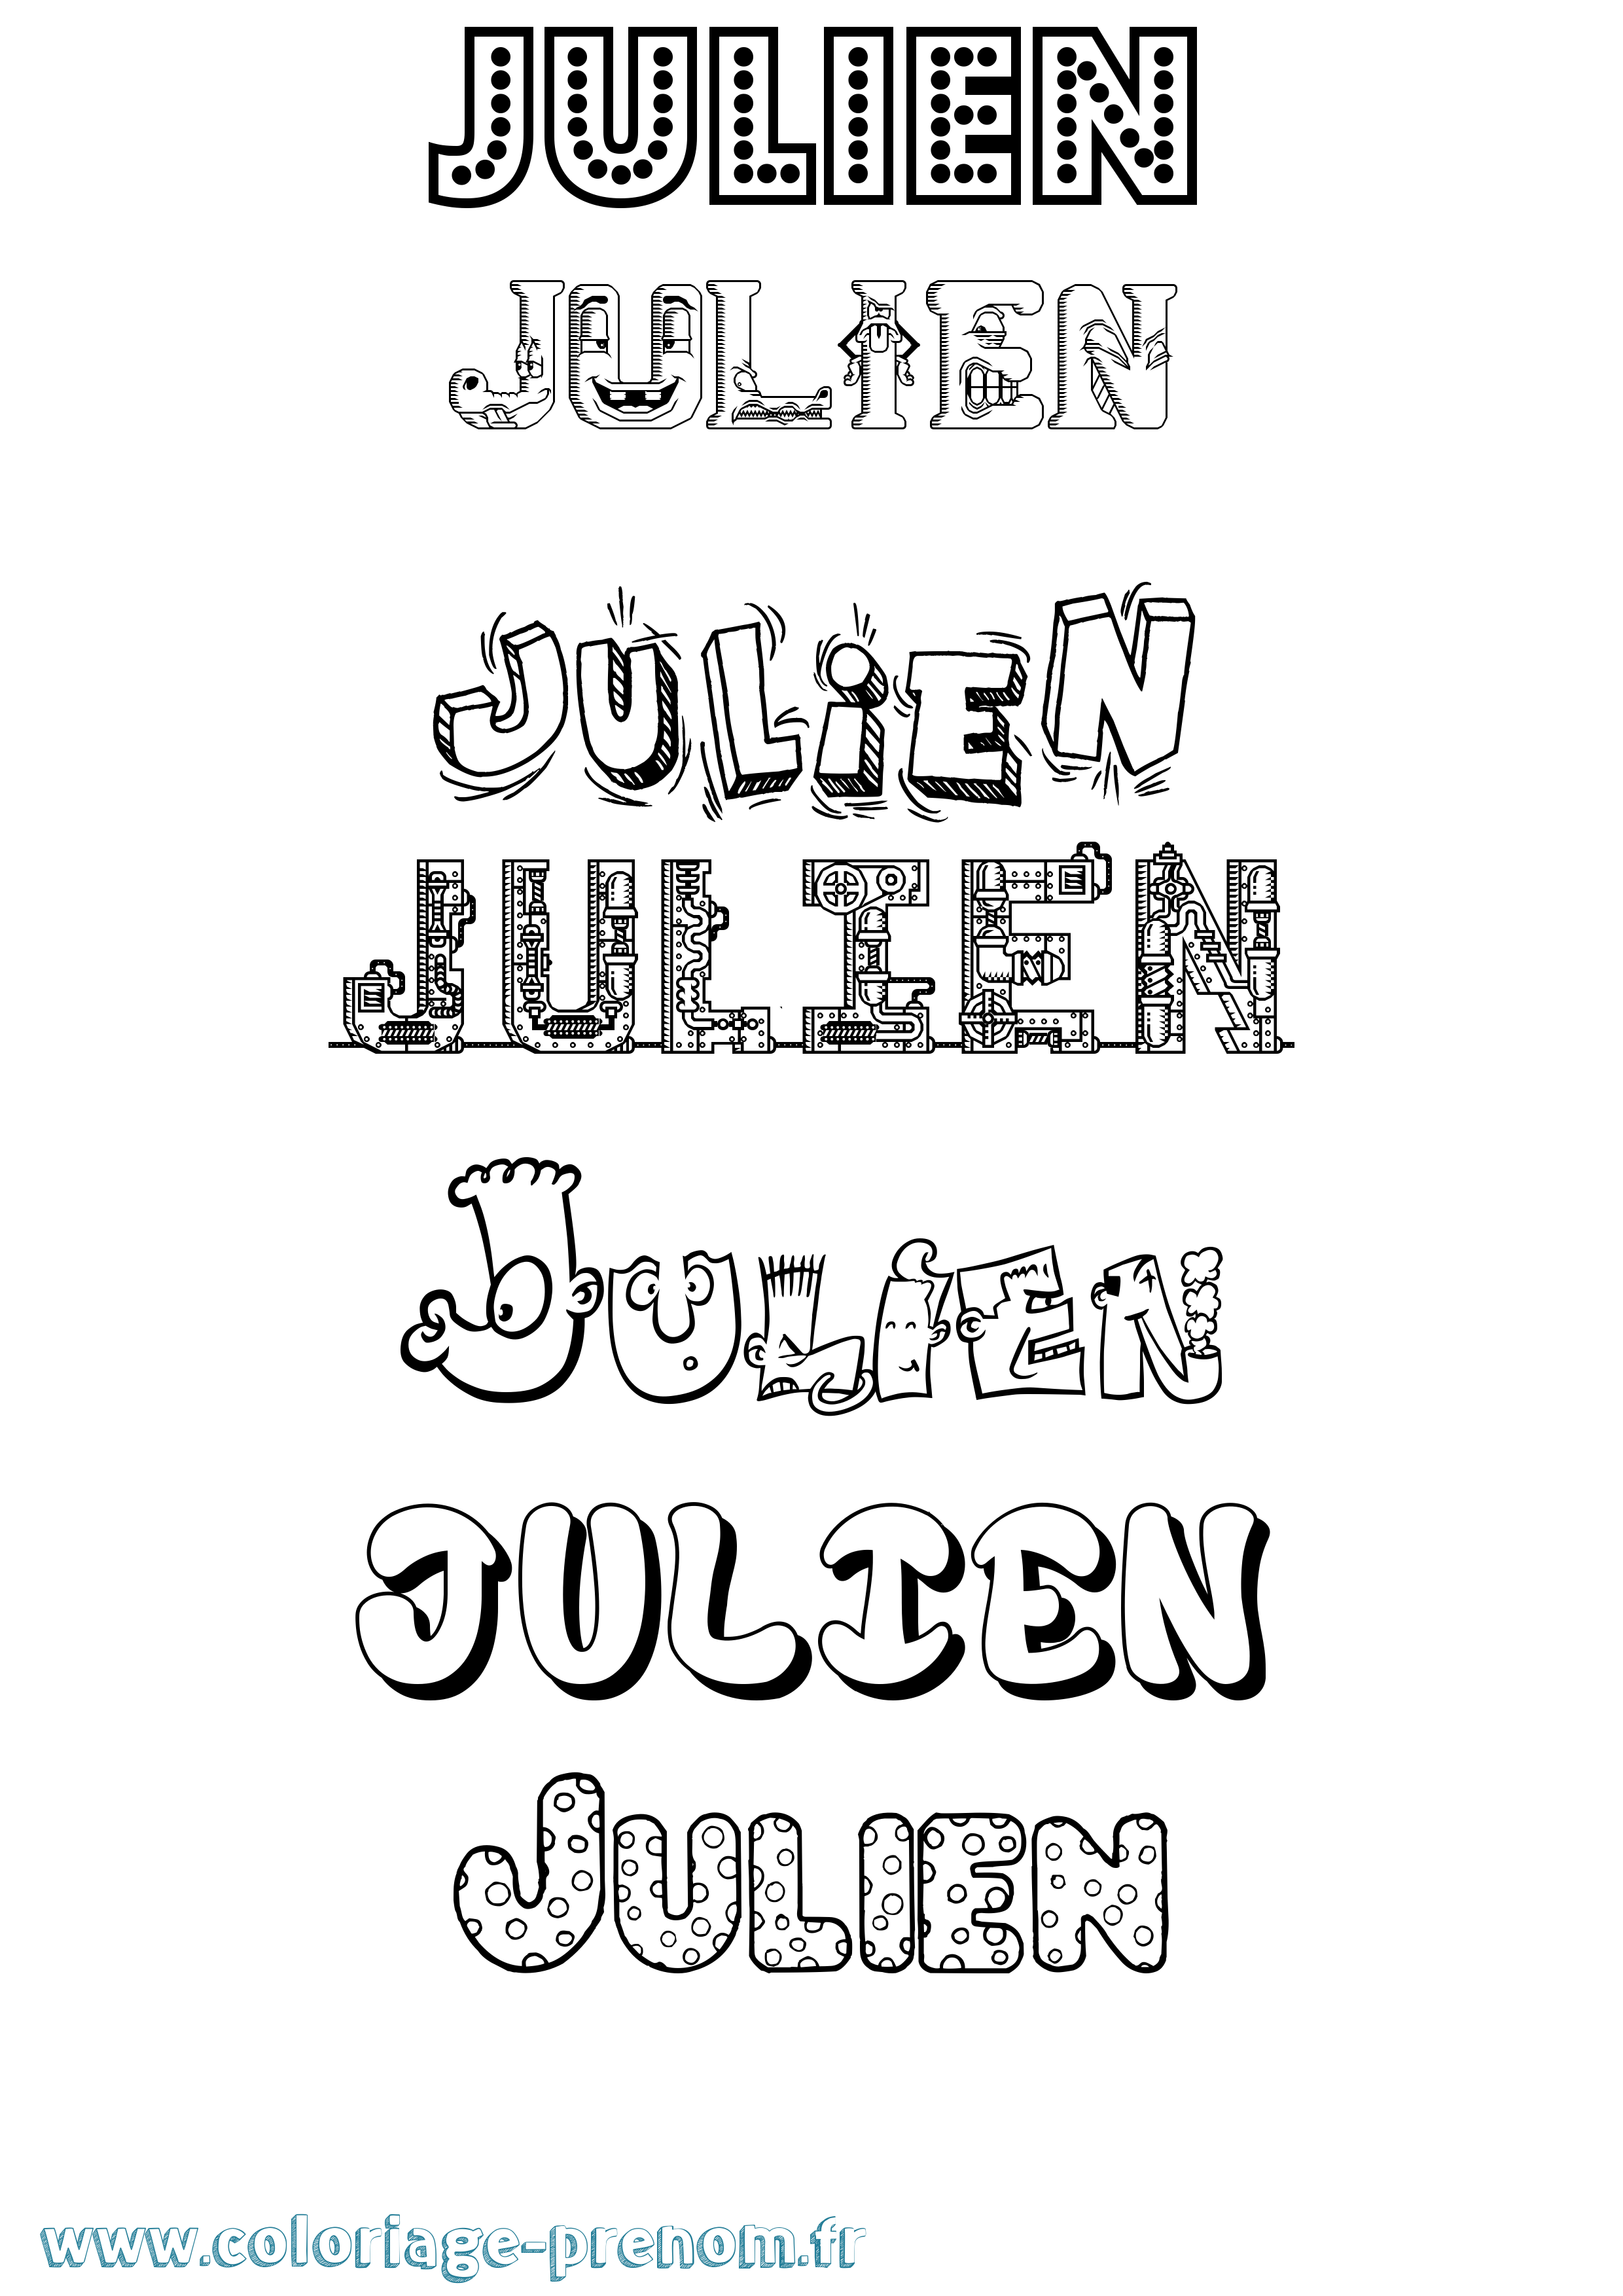 Coloriage prénom Julien Fun